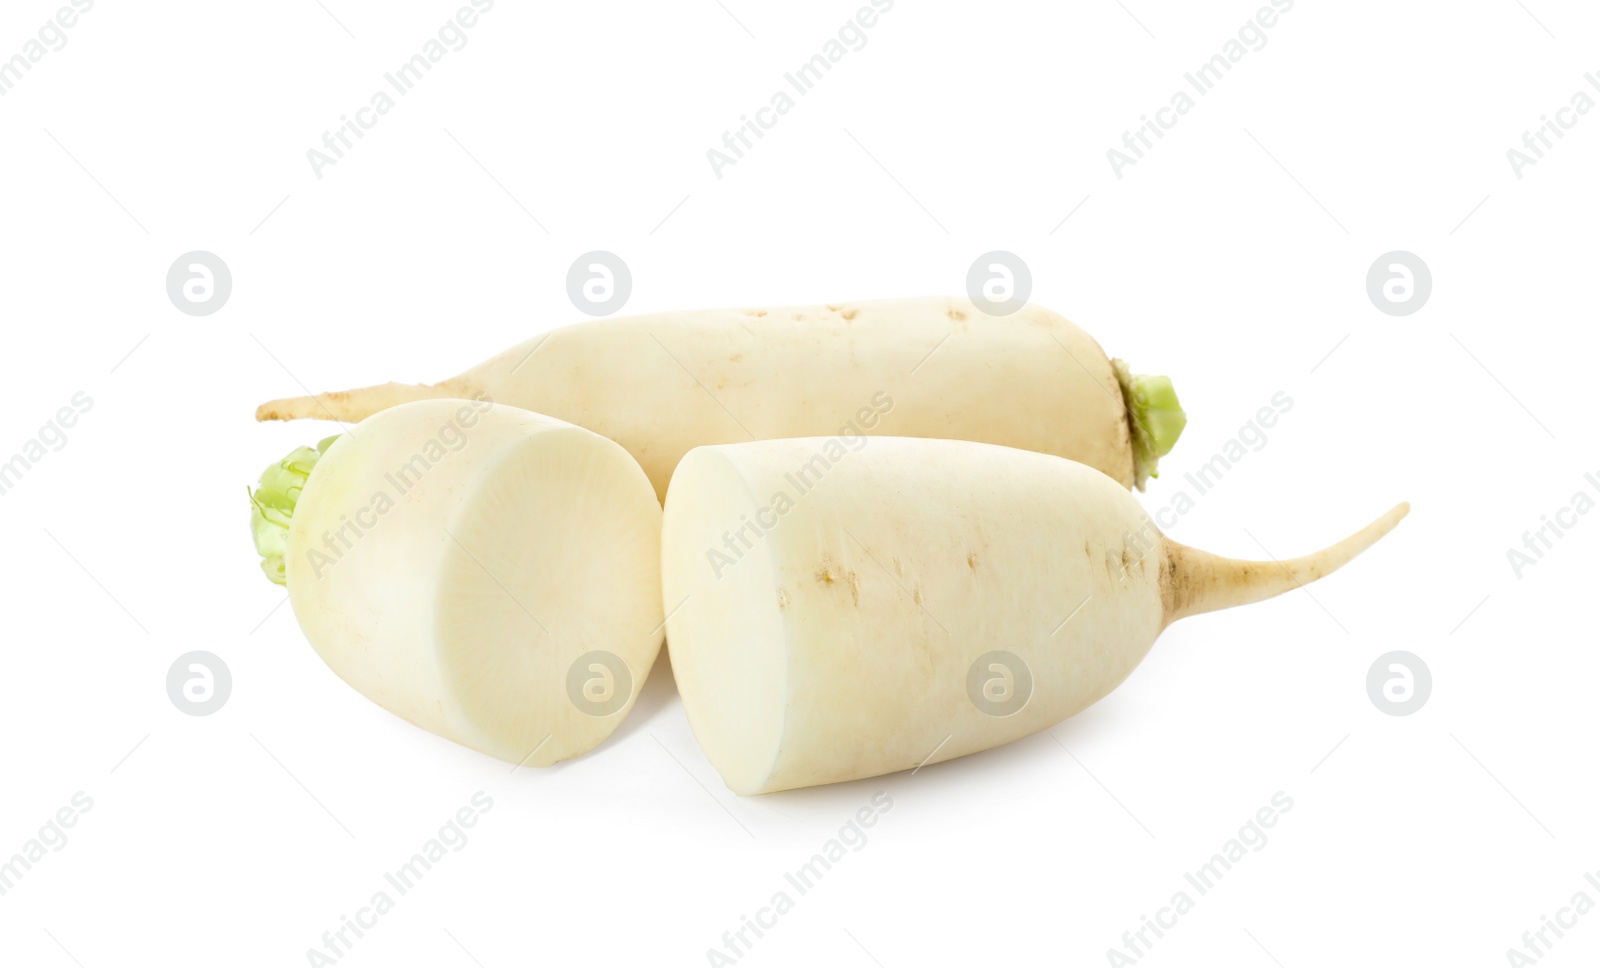 Photo of Sliced and whole fresh ripe turnips on white background